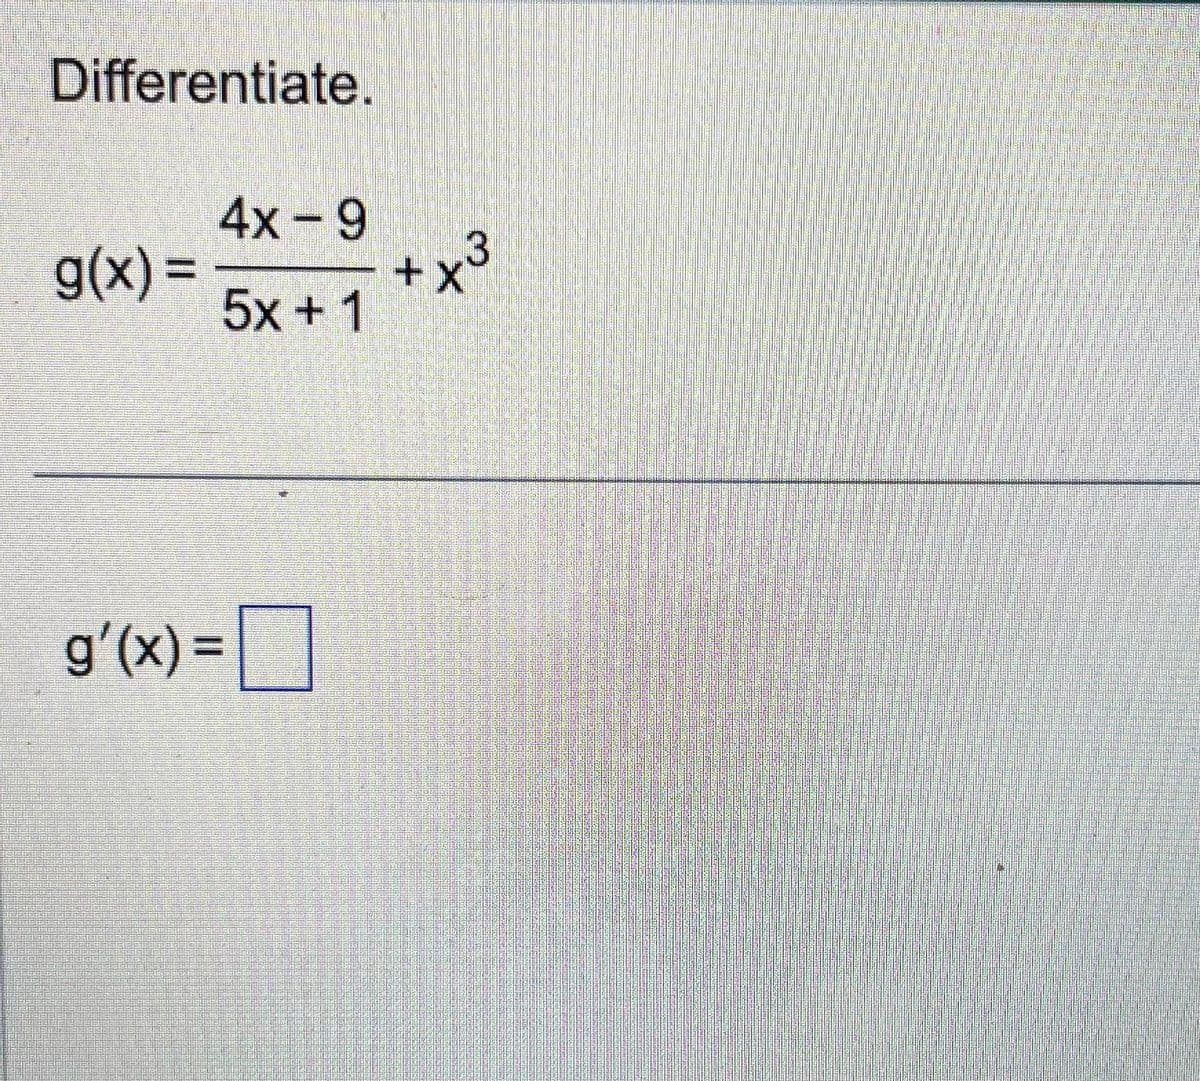 Differentiate.
g(x) =
4x-9
gaamcomm
5x+1
g'(x)=
+x3